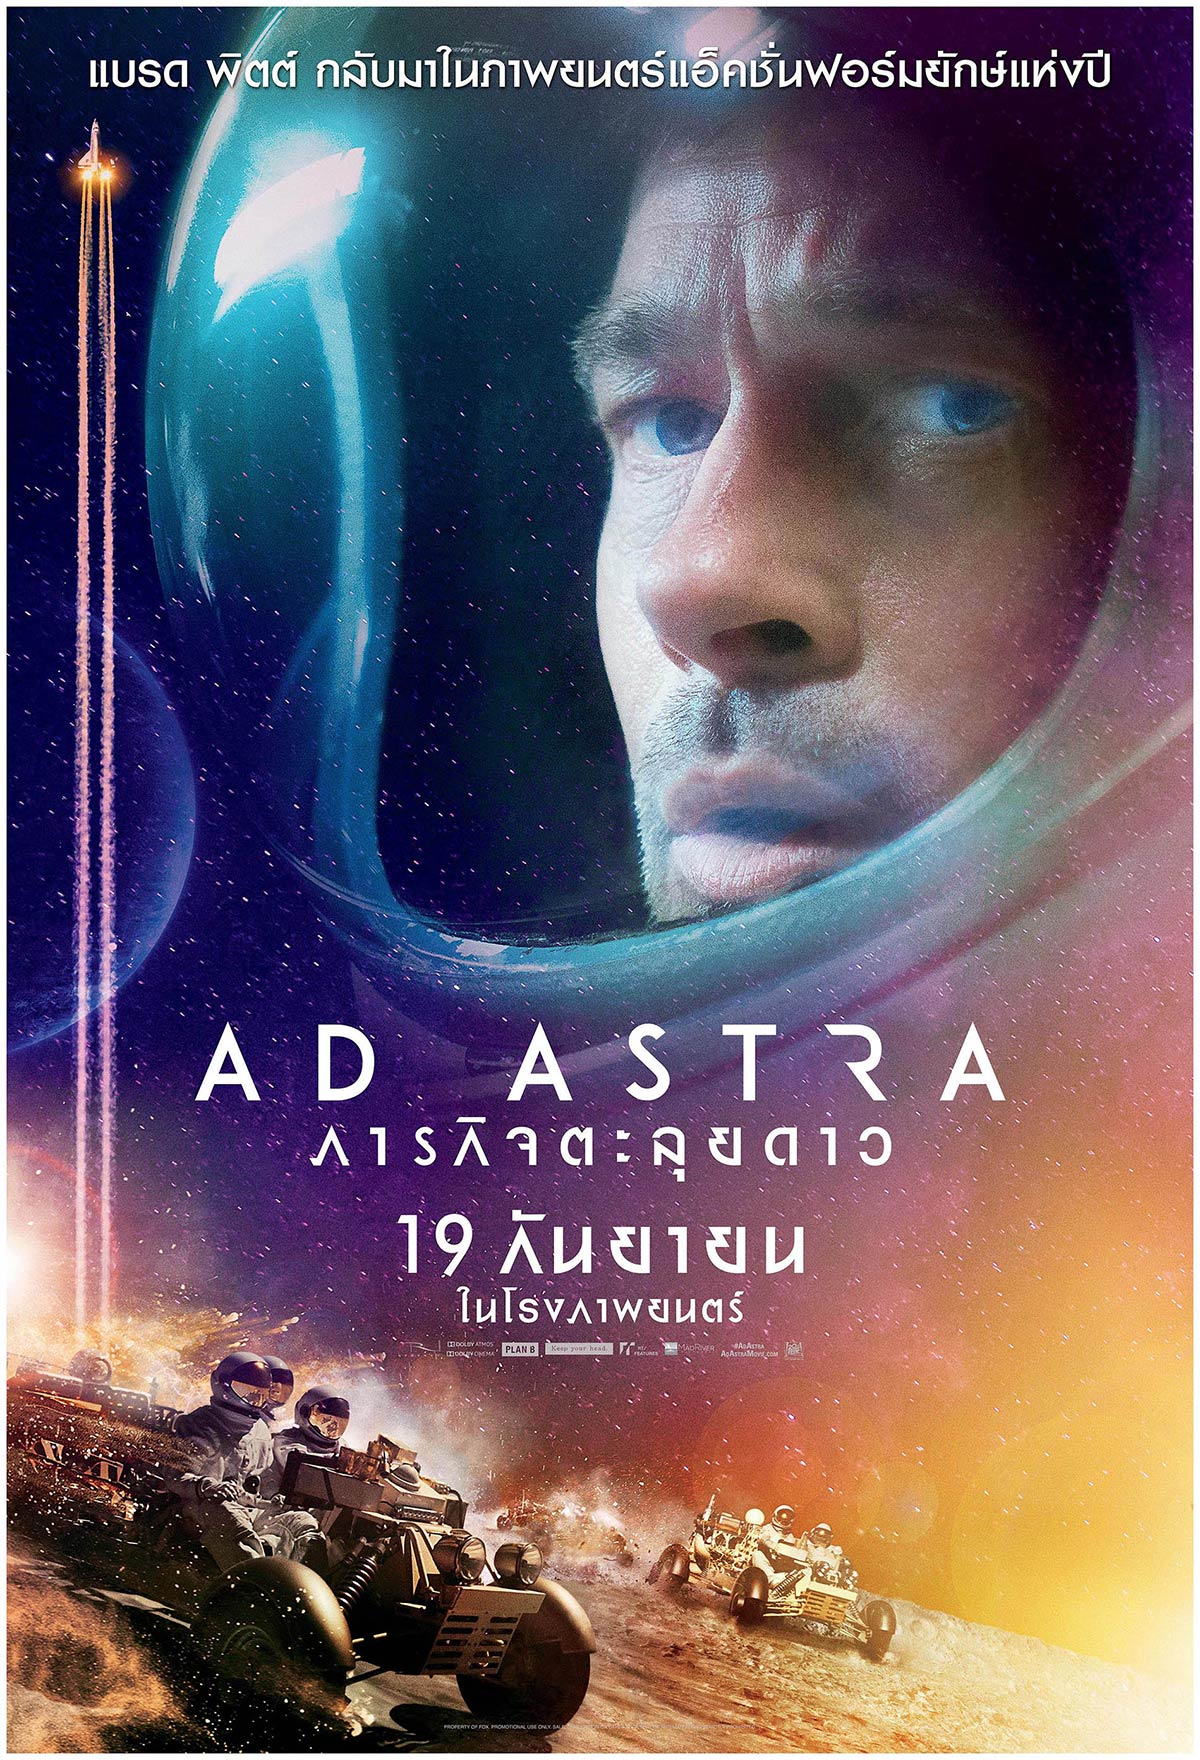 ดูหนังออนไลน์ฟรี AD ASTRA 2019 ภารกิจตะลุยดาว ดูหนัง netflix